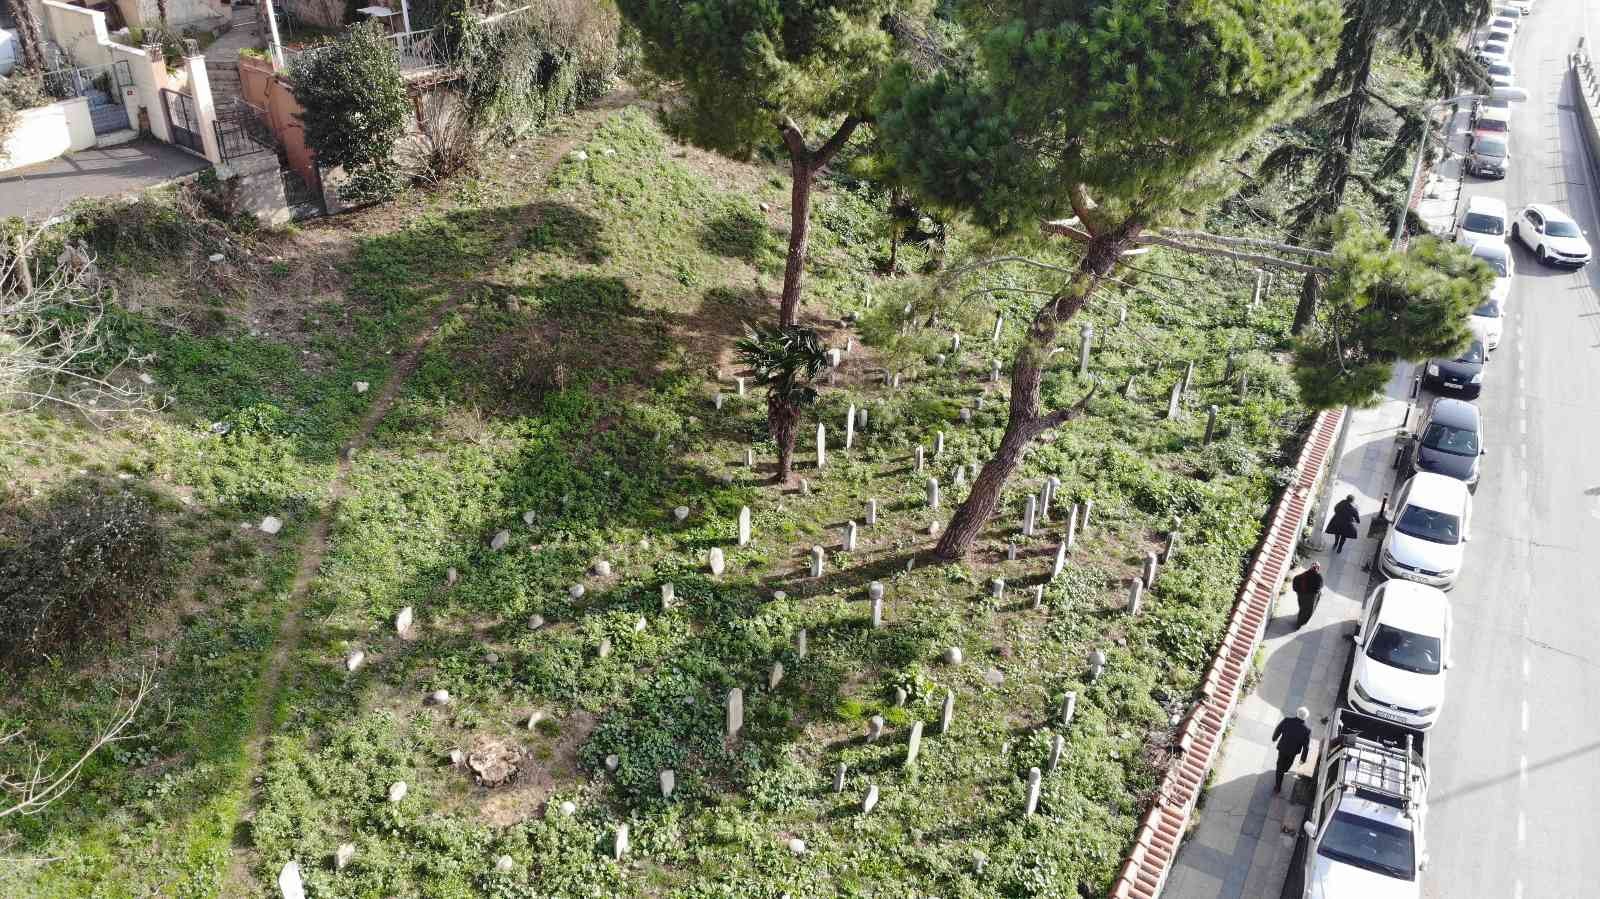 Beykoz’ da tarihi mezarlık definecilerin talanına uğradı #istanbul